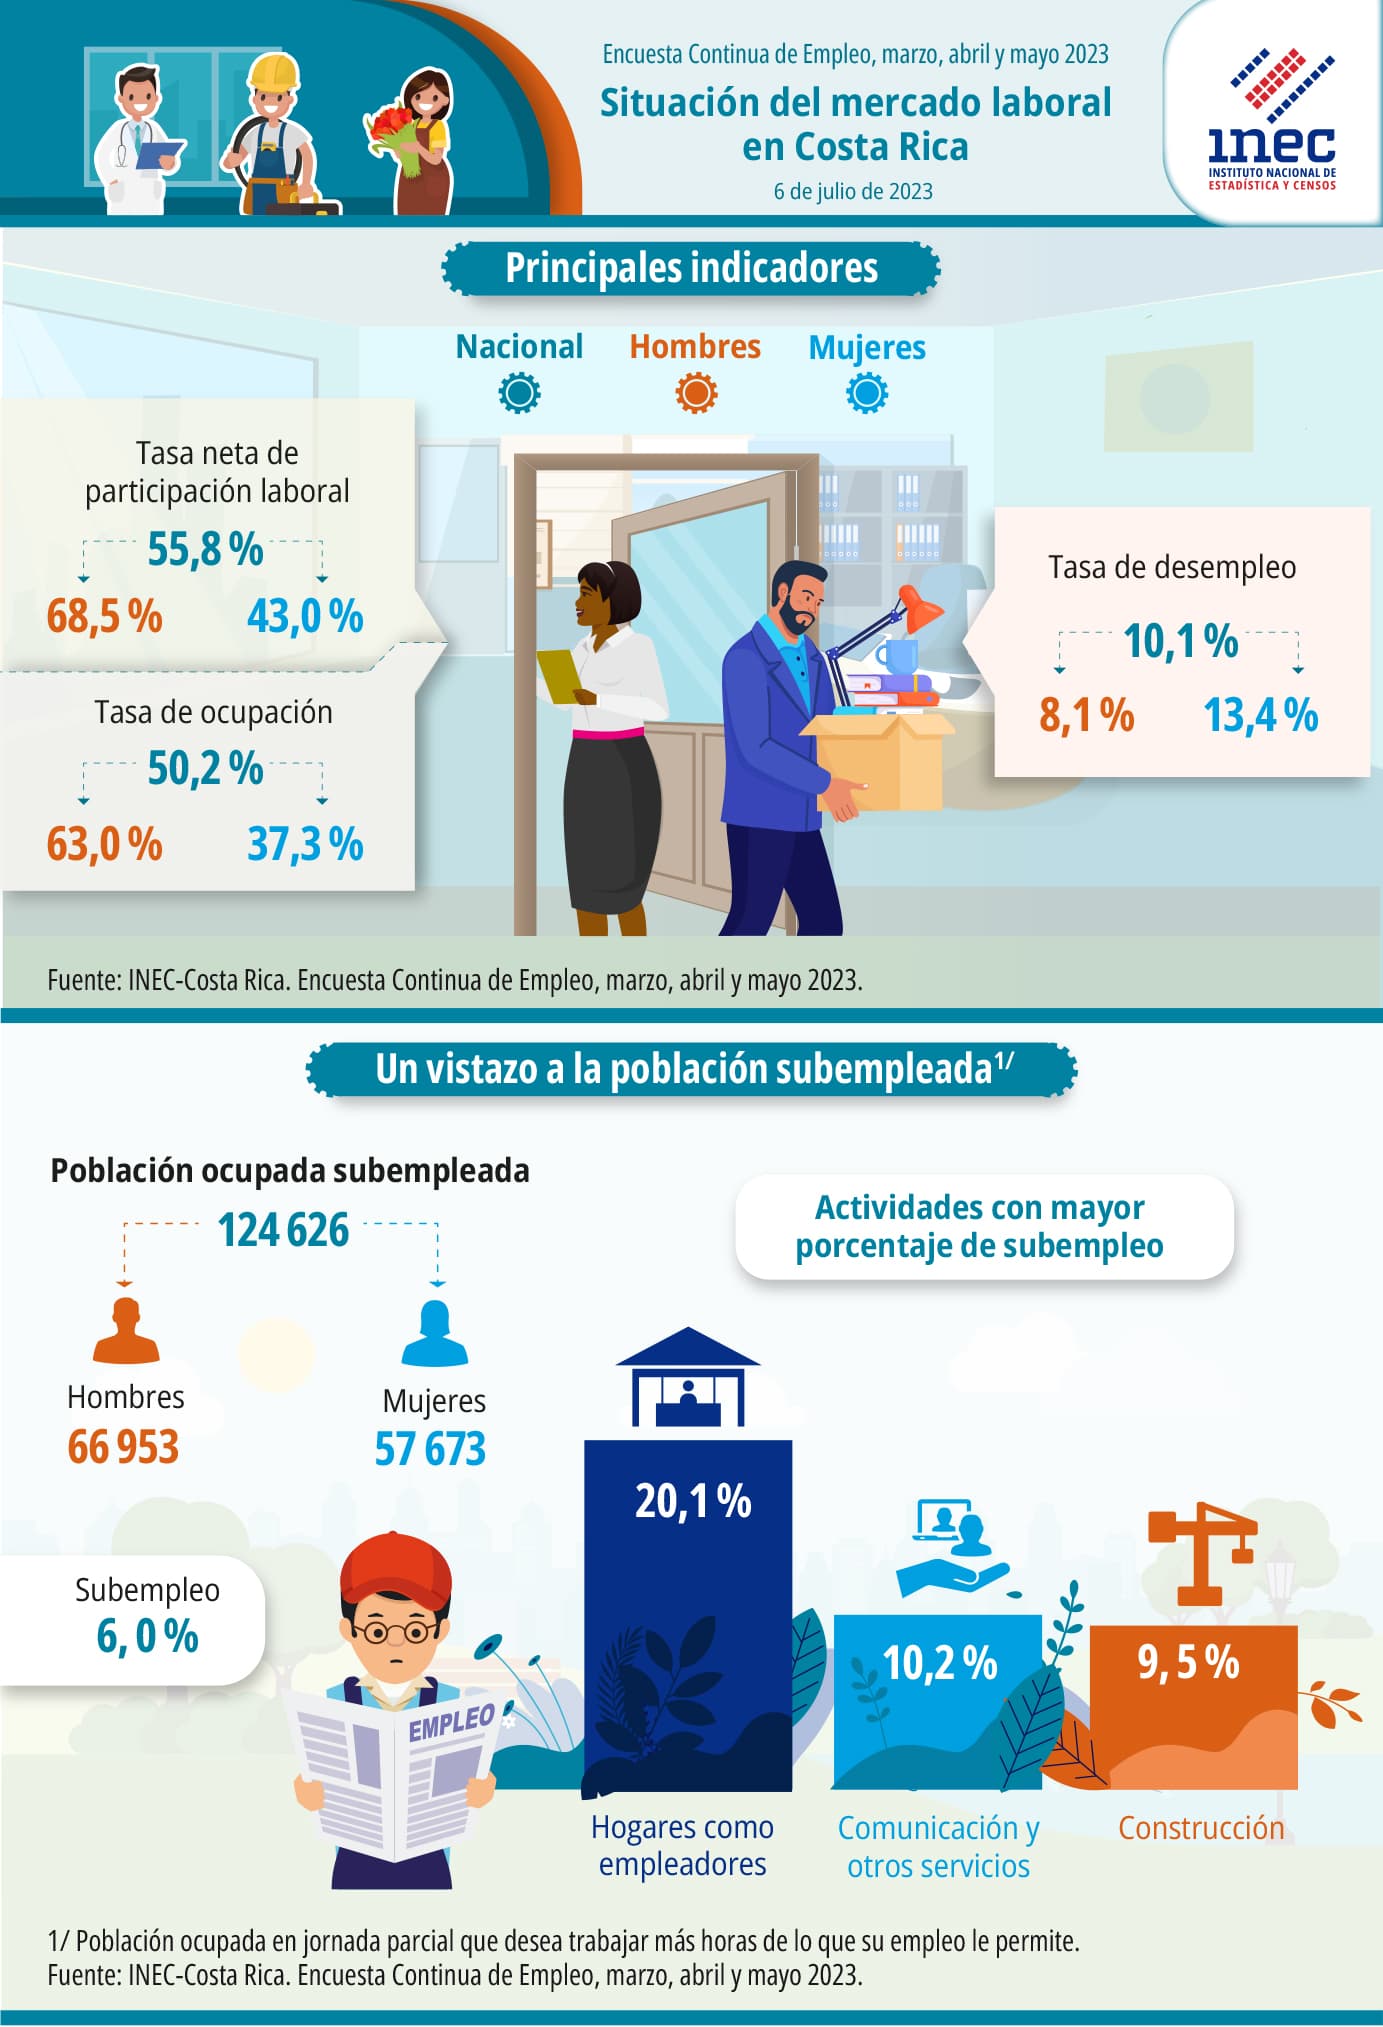 Infografía. Situación del mercado laboral en Costa Rica. Encuesta Continua de Empleo. Trimestre móvil: marzo, abril, mayo 2023.